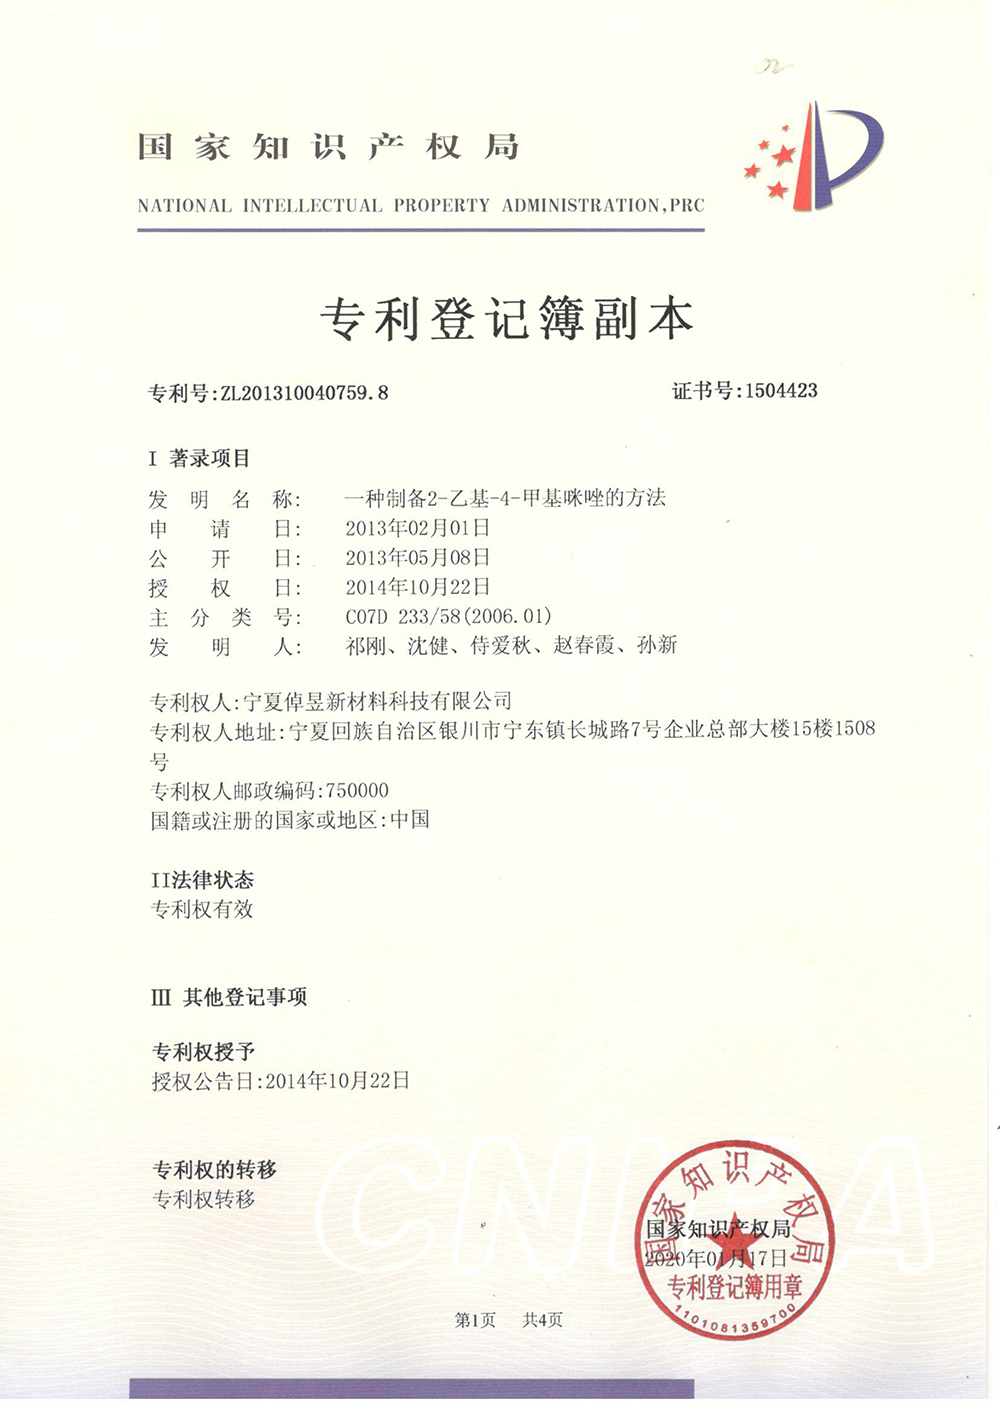 2-乙基-4-甲基咪唑的方法-专利登记簿-1_上海浩登材料股份有限公司